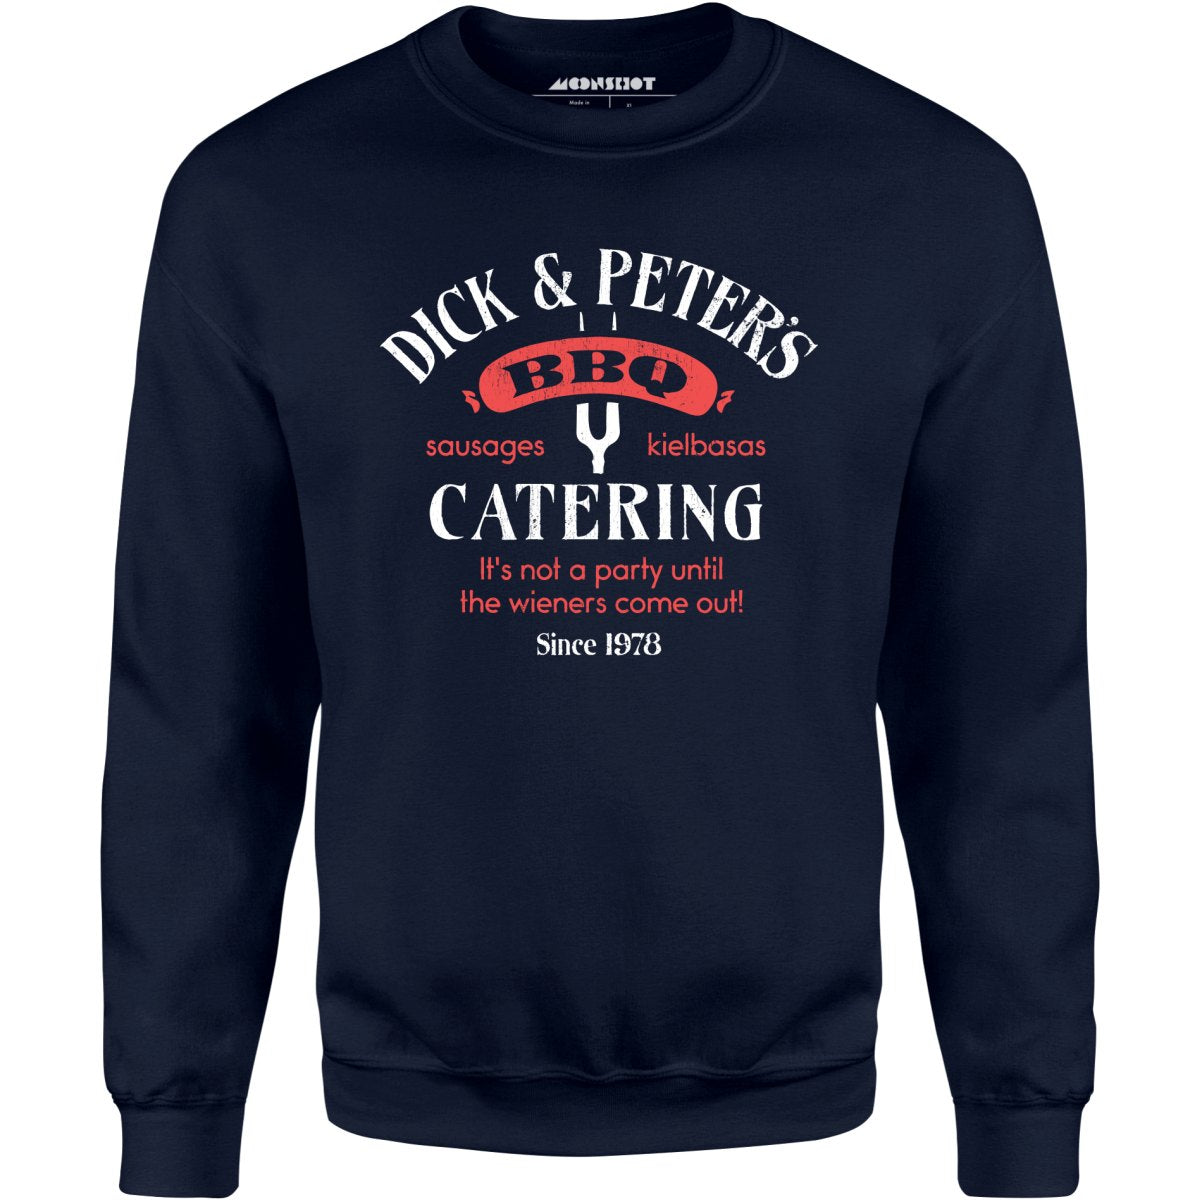 Dick & Peter's BBQ Catering - Unisex Sweatshirt